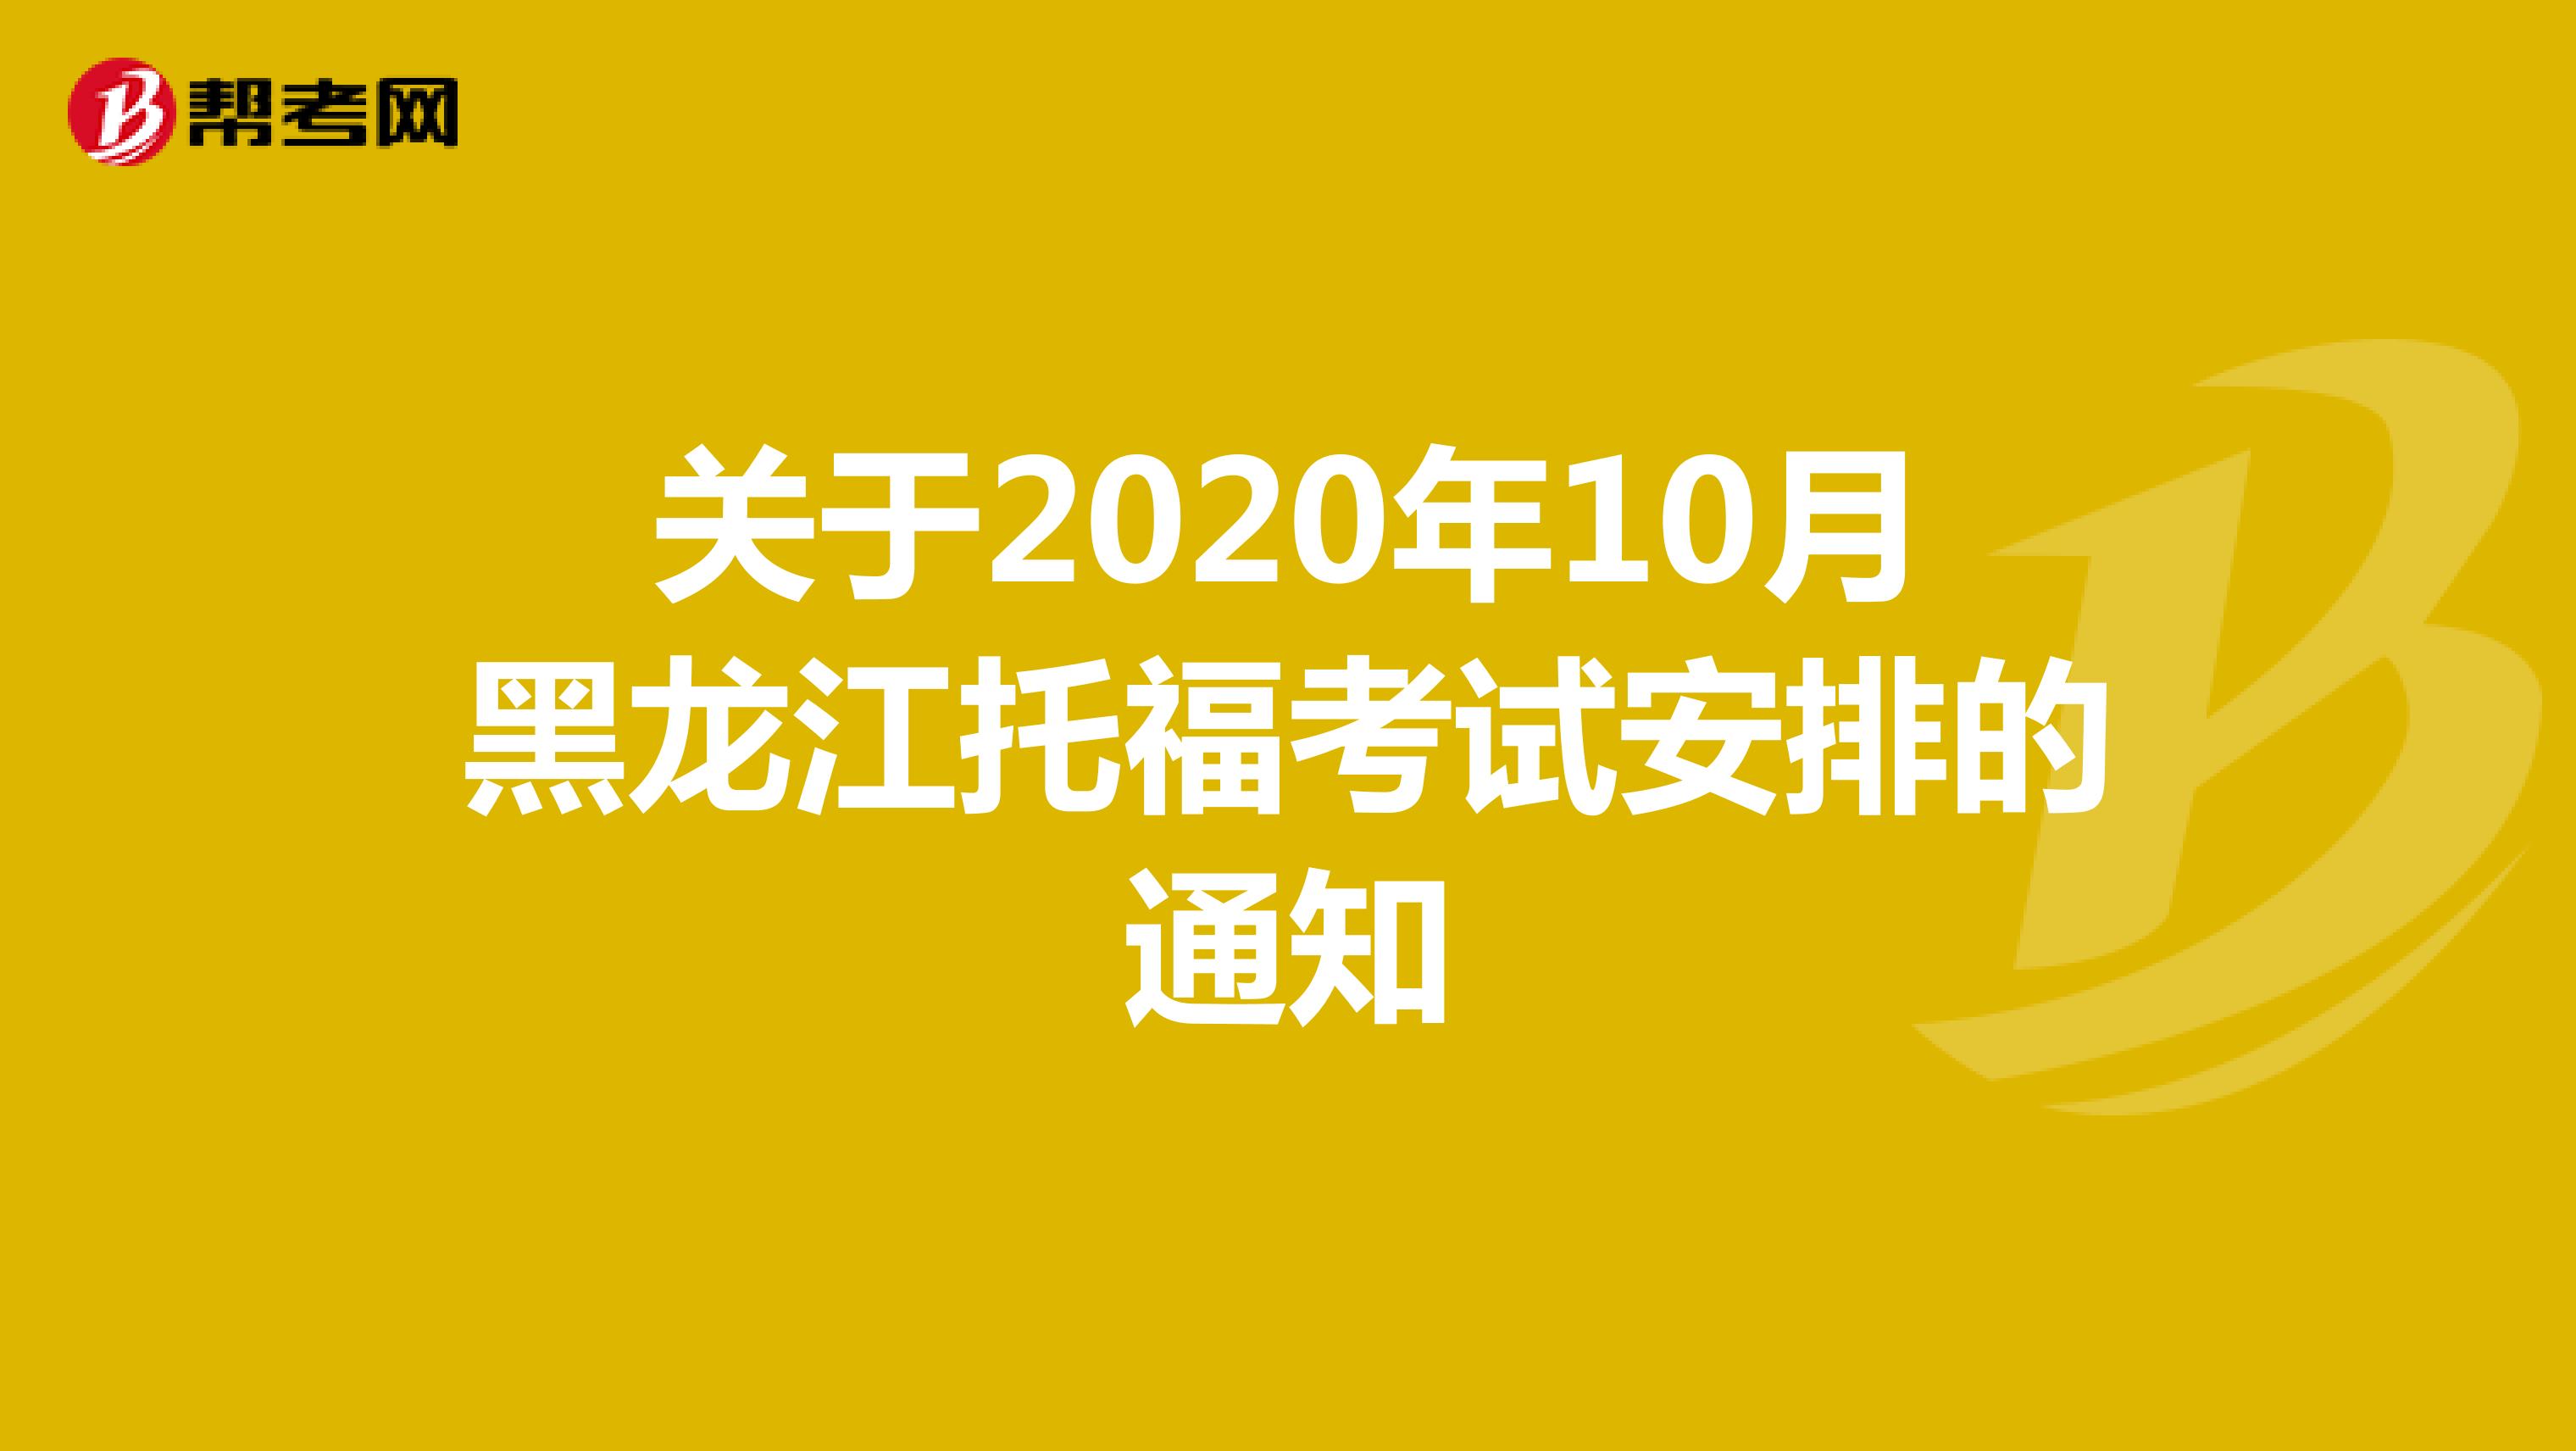 关于2020年10月黑龙江托福考试安排的通知